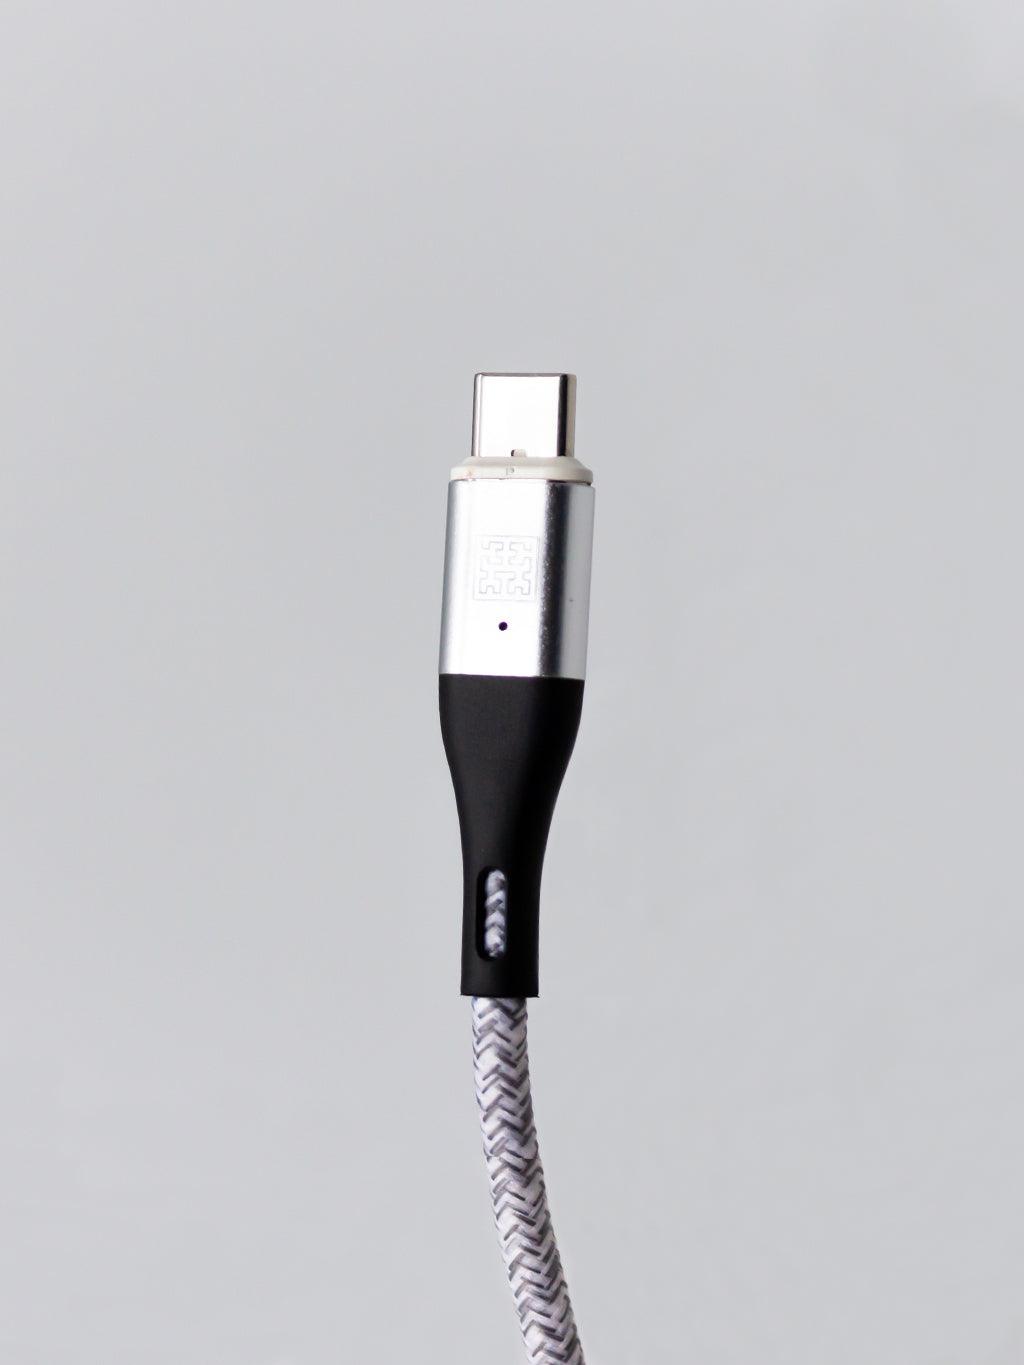 Syllucid Charge: USB C Connector - Syllucid